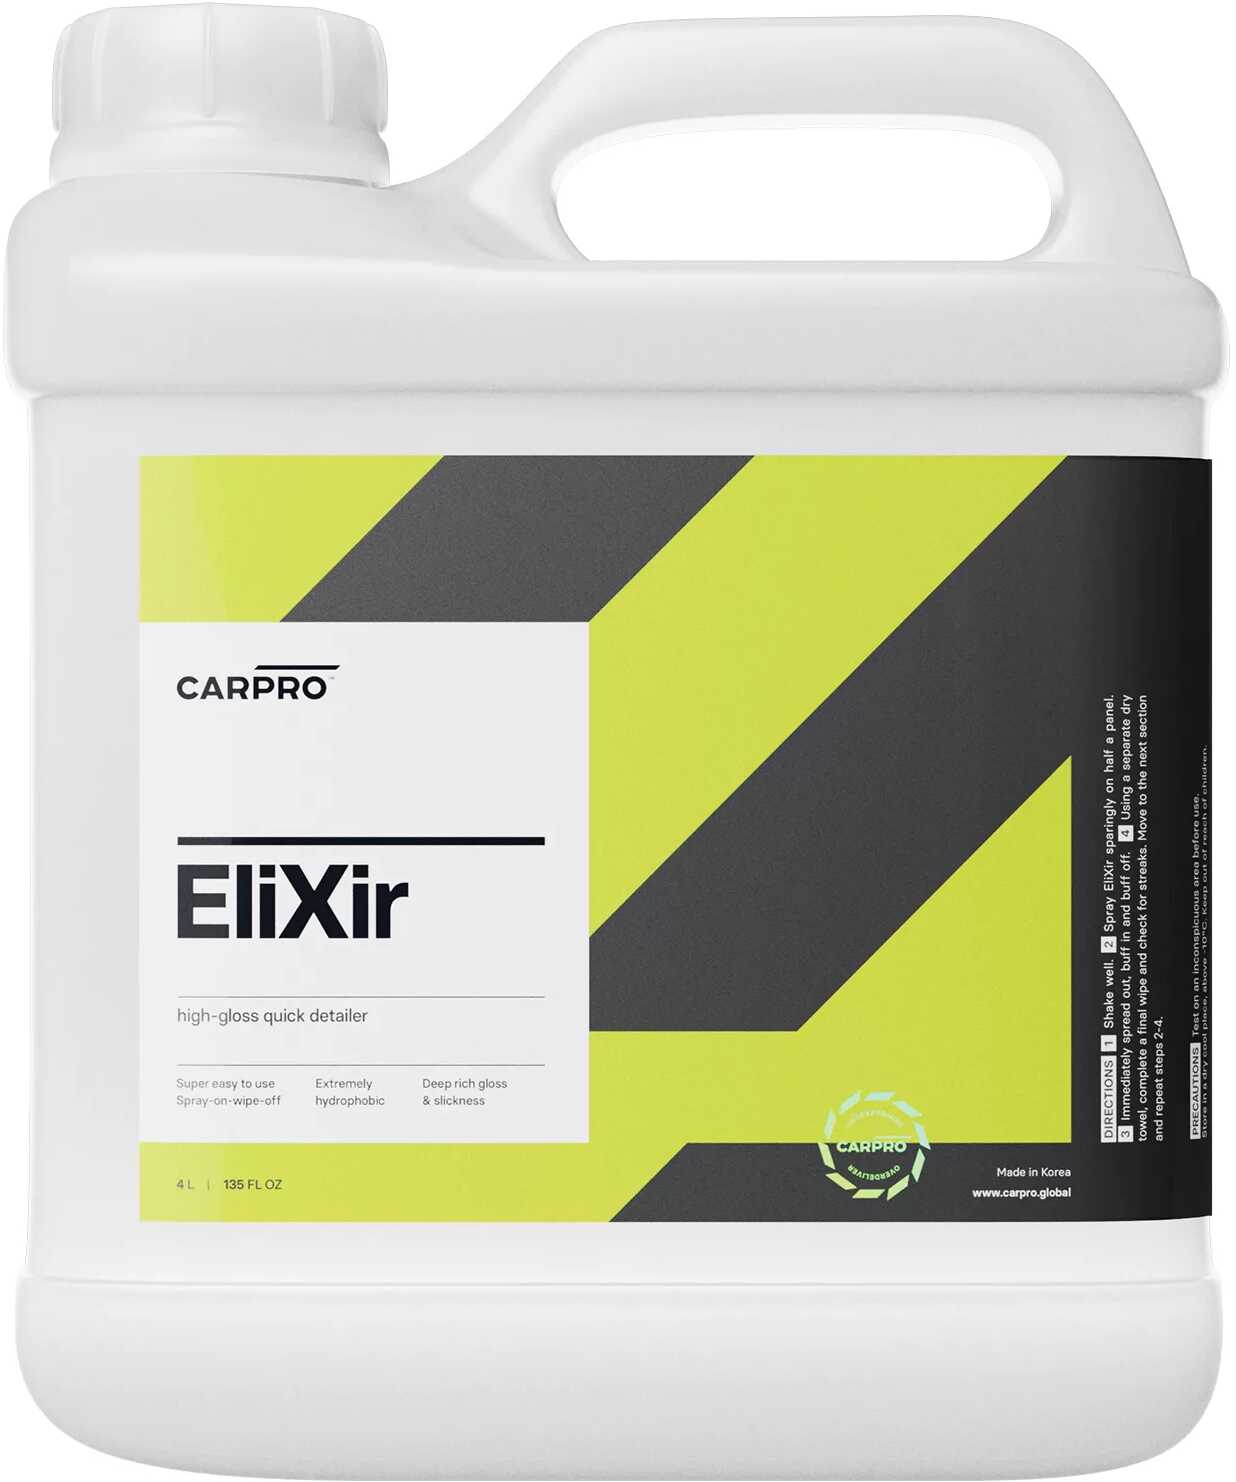 CARPRO CQUARTZ CarPro Elixir szybki i łatwy w aplikacji quick detailer, wysoka głębia i połysk 4l CAR000246